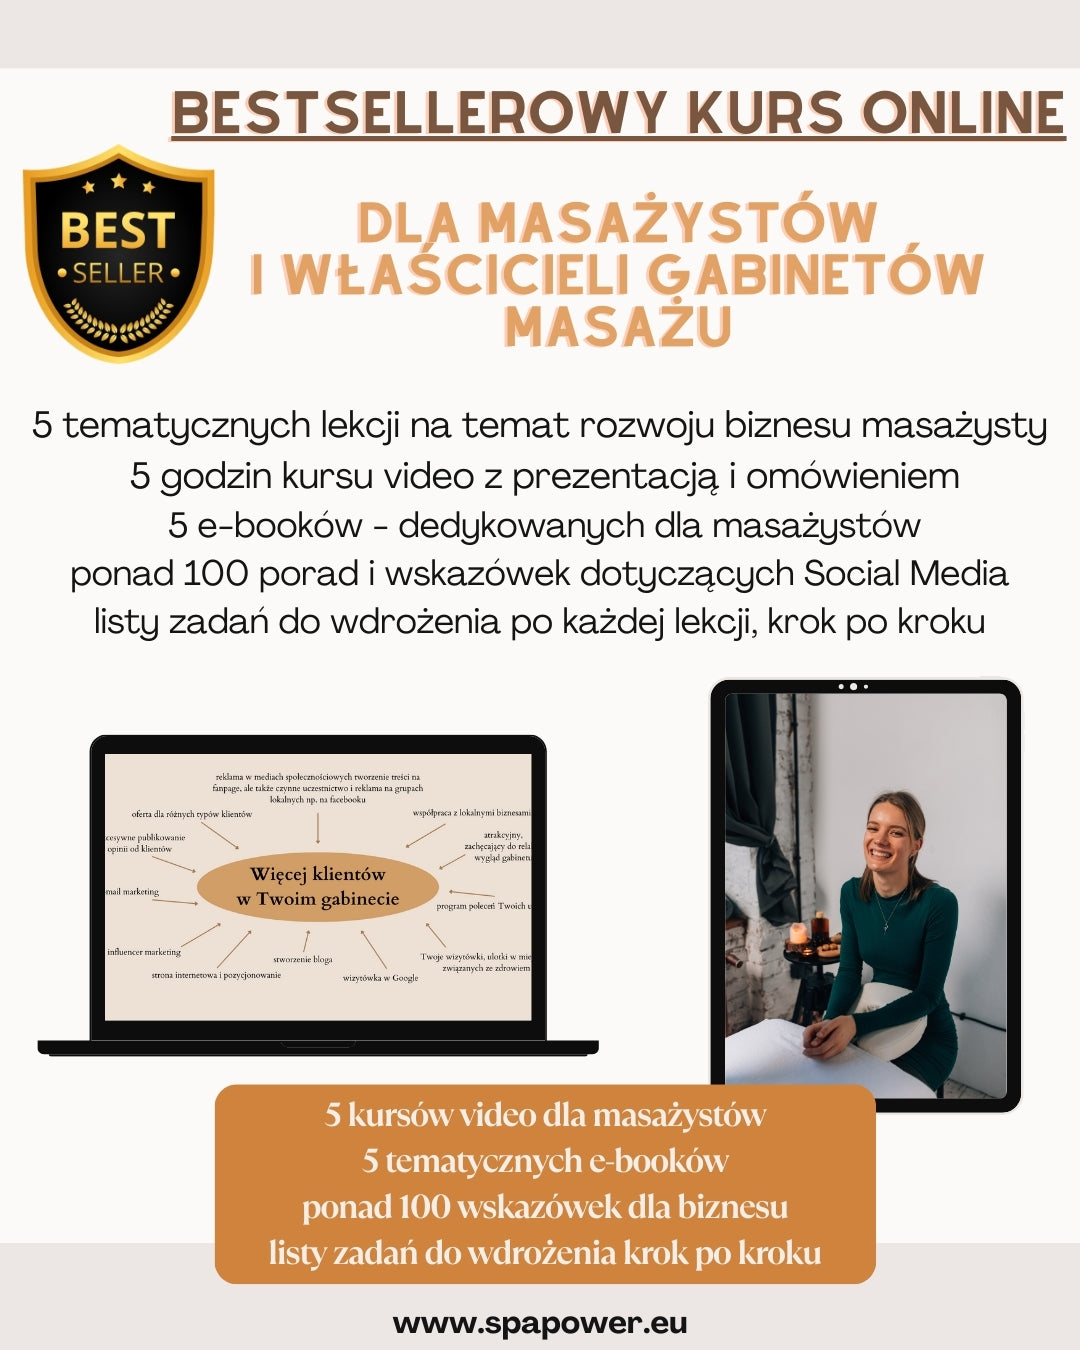 ⭐️ BESTSELLER! ⭐️  Zaawansowany kurs online dla masażystów - promocja gabinetu masażu